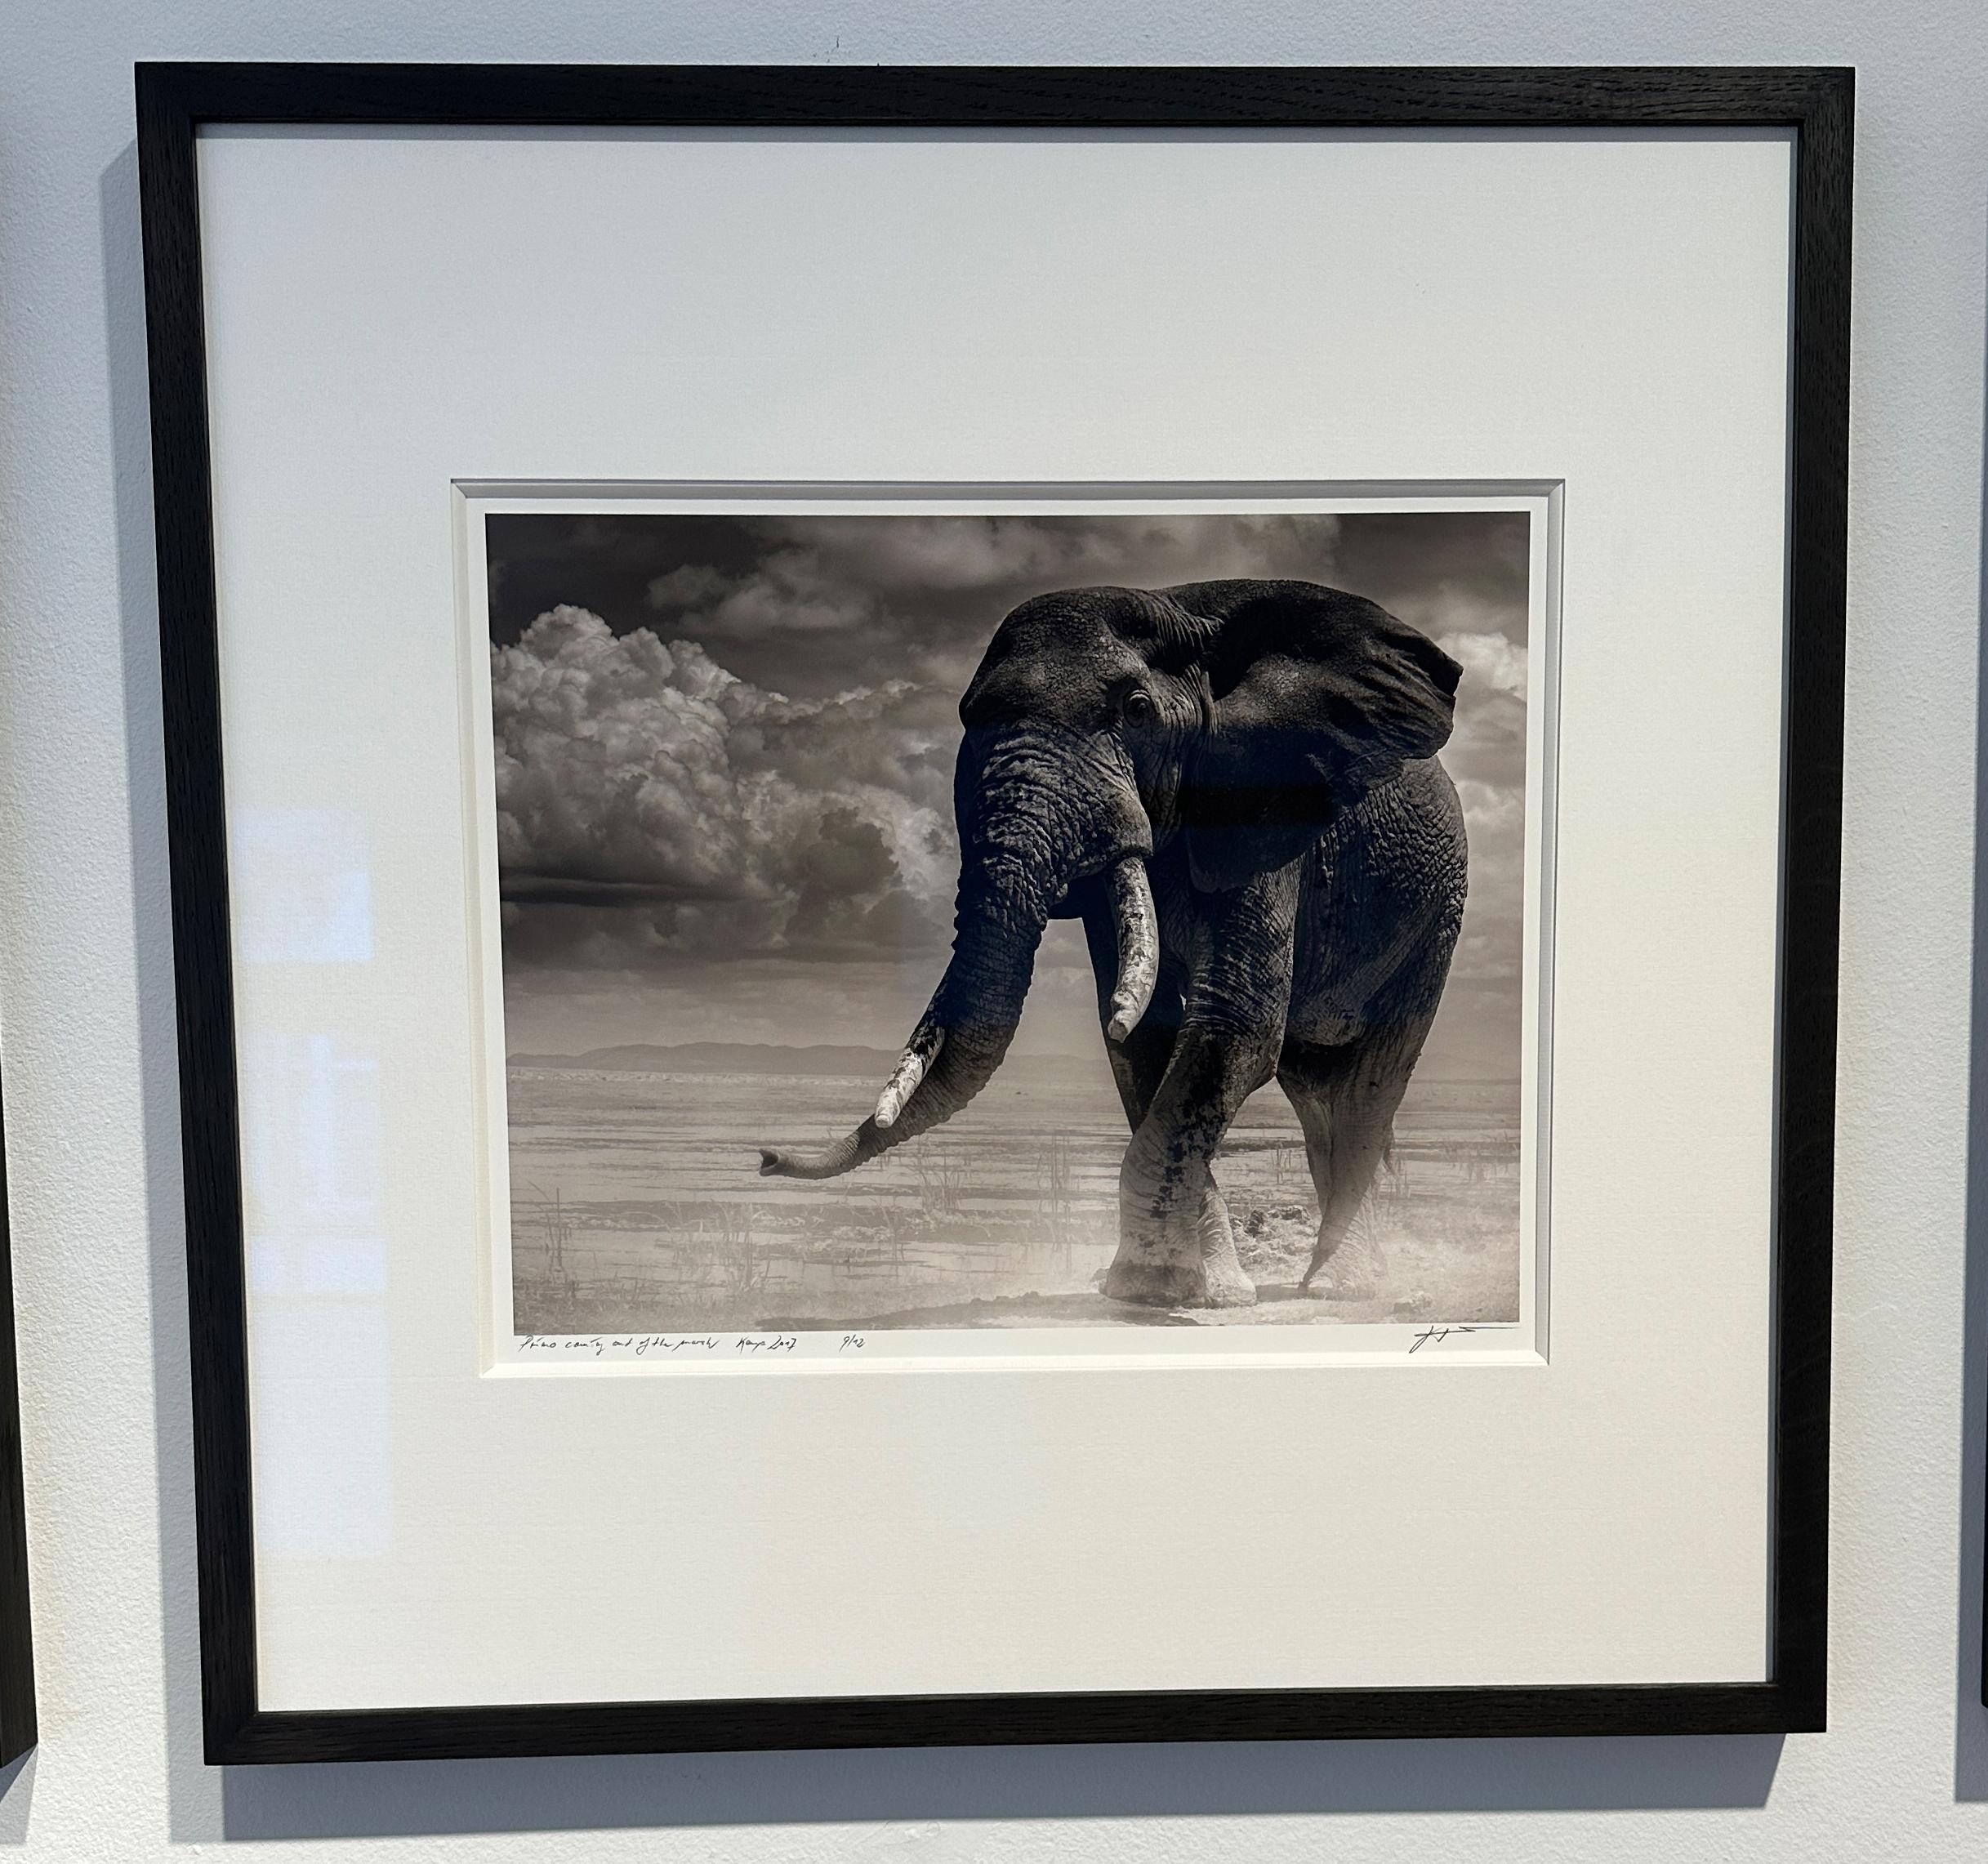 Primo kommt aus dem Sumpf, Elefant, Tier, Afrika – Photograph von Joachim Schmeisser